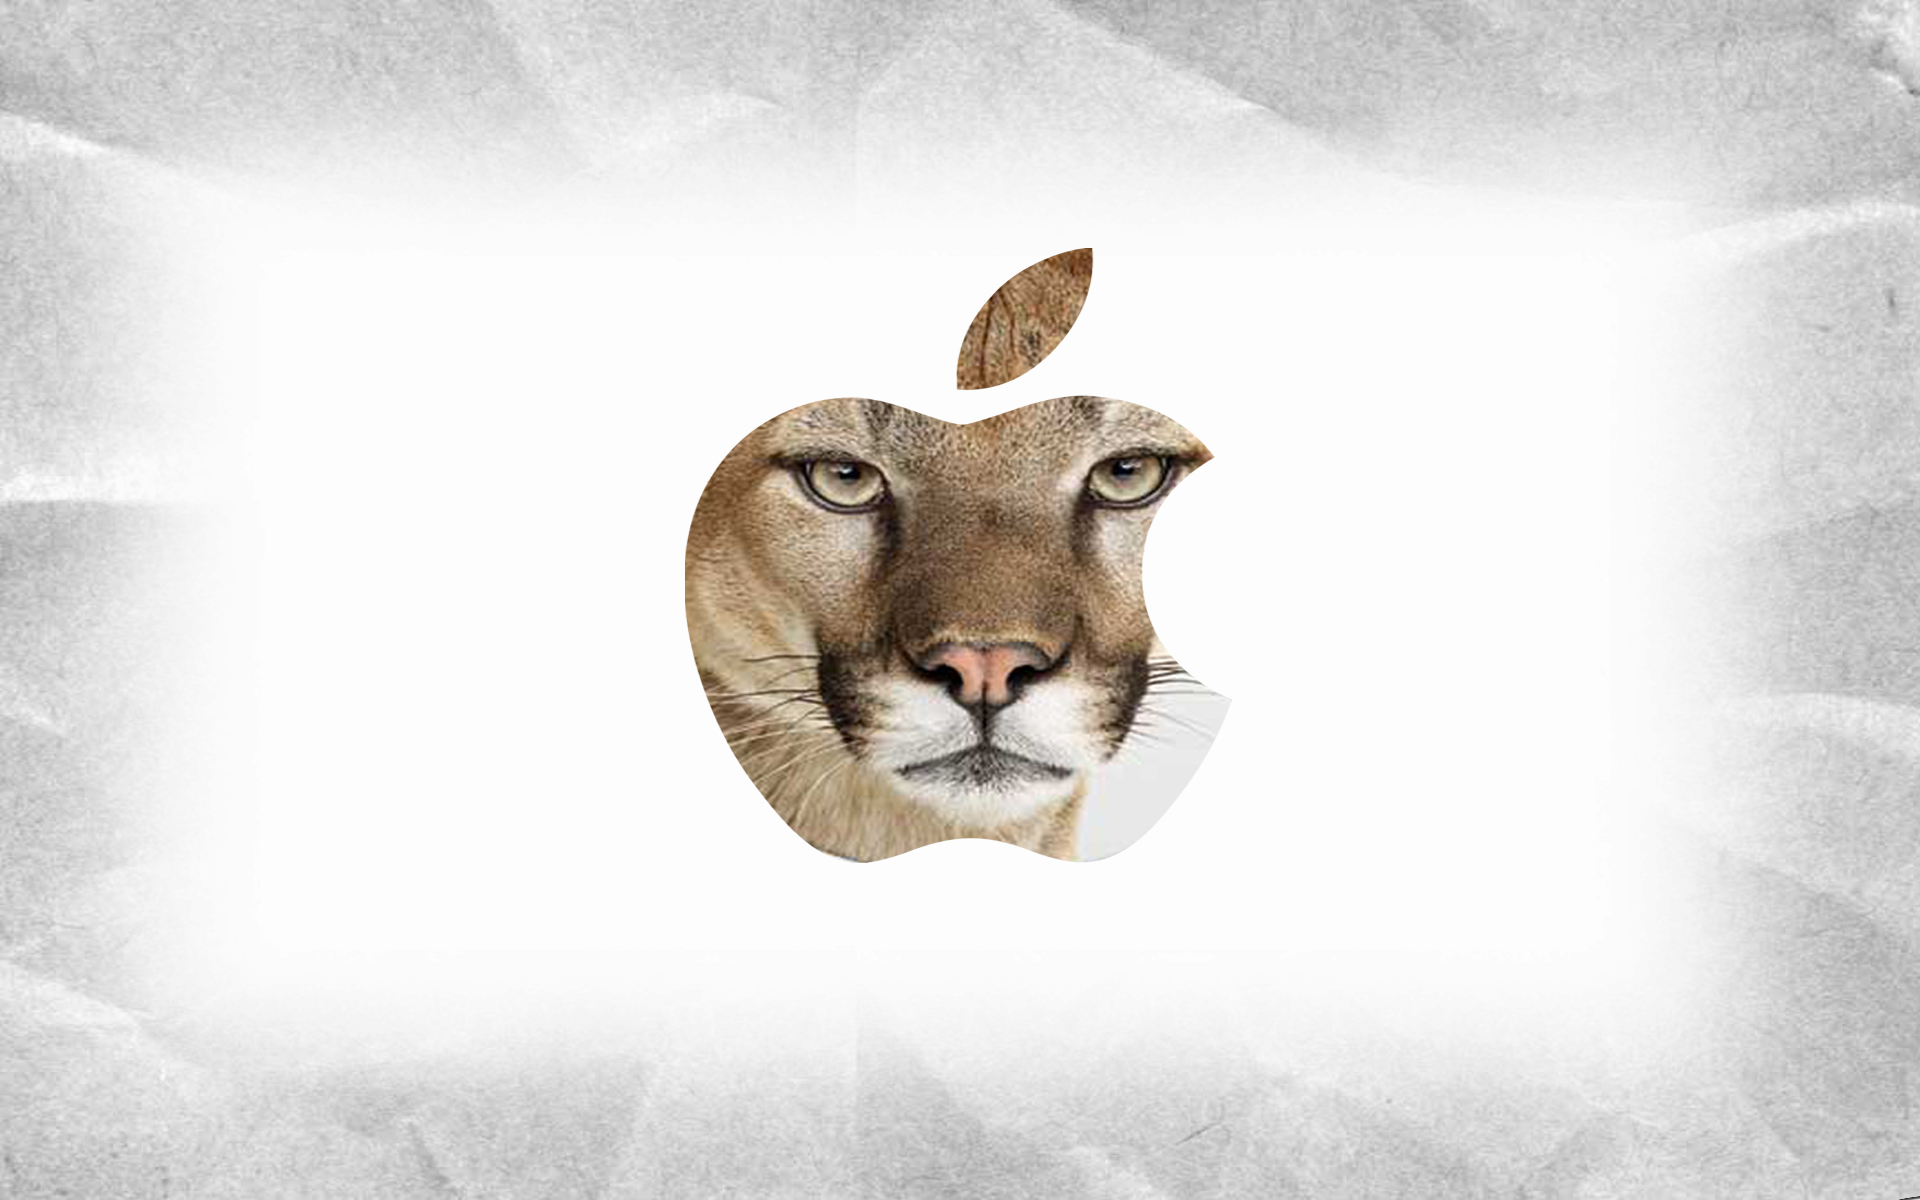 mac wallpaper hd lion